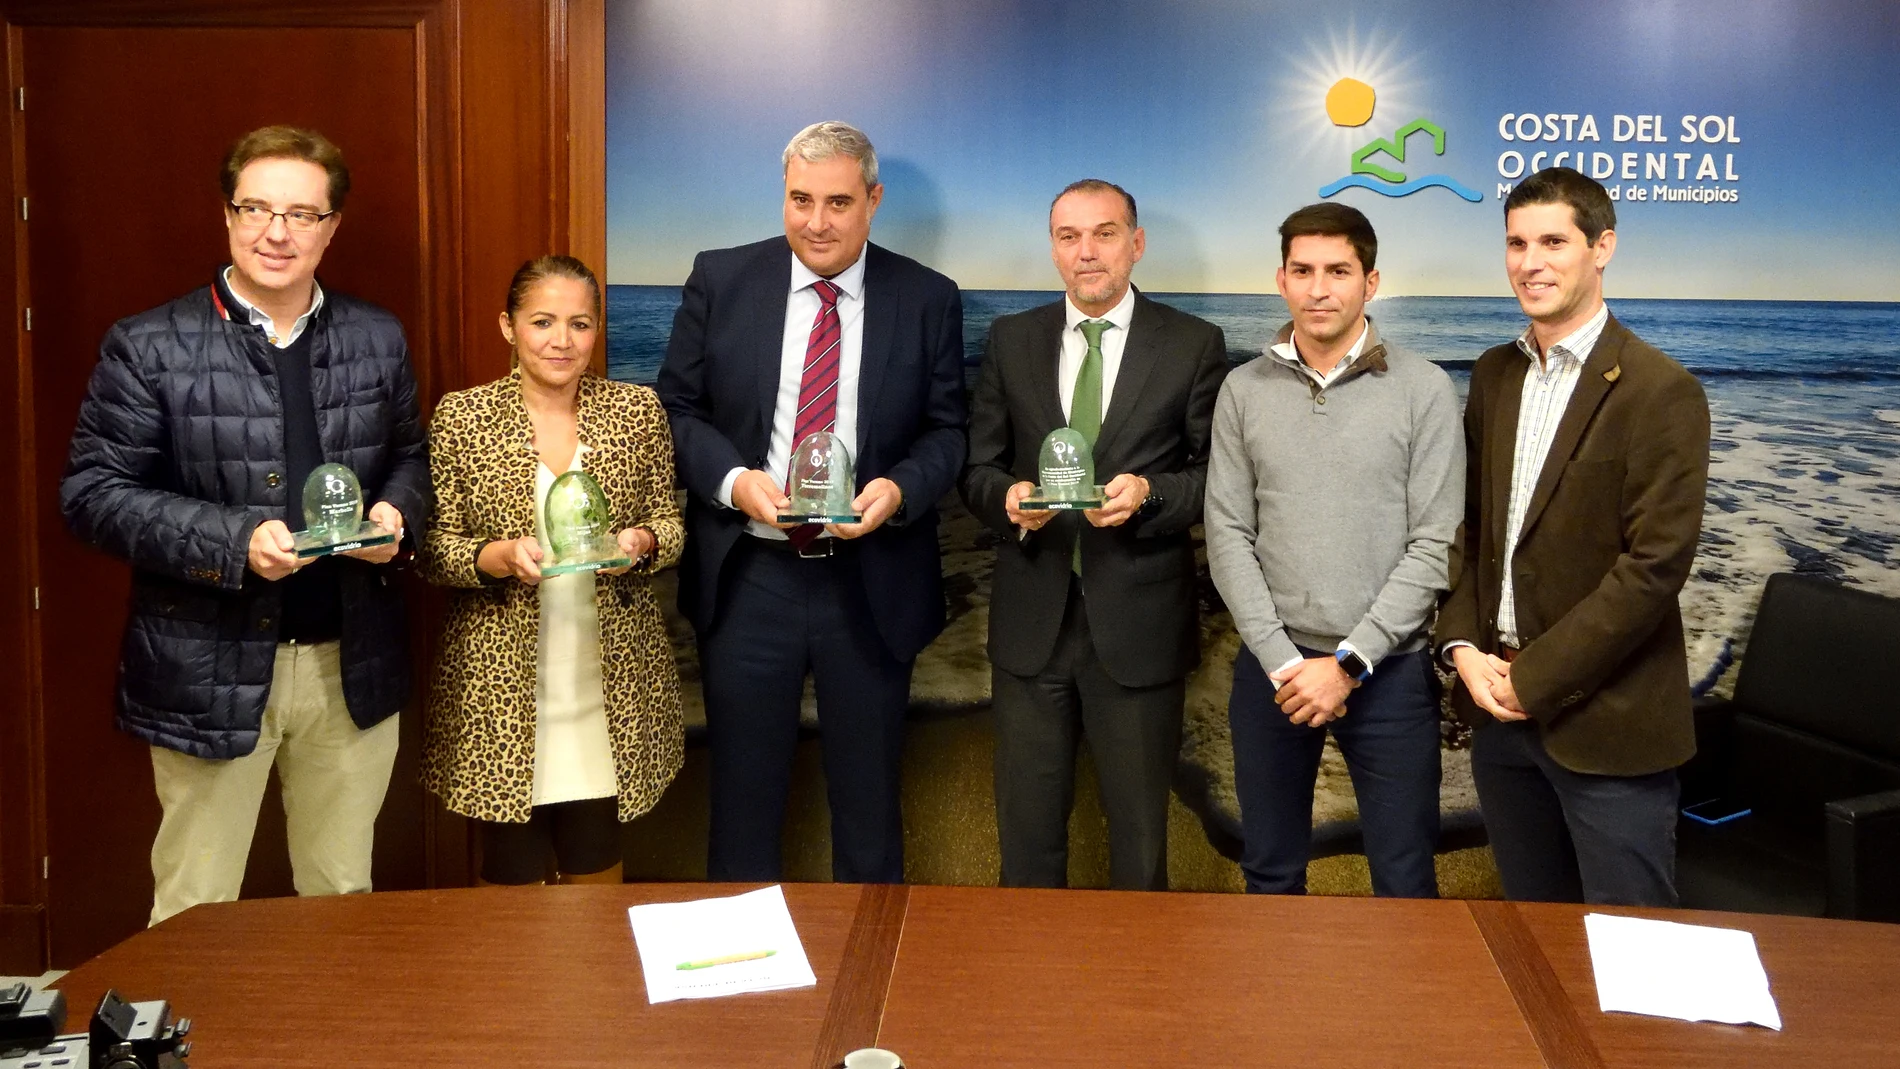 Marbella, Mijas y Torremolinos reciben las banderas verdes de Ecovidrio